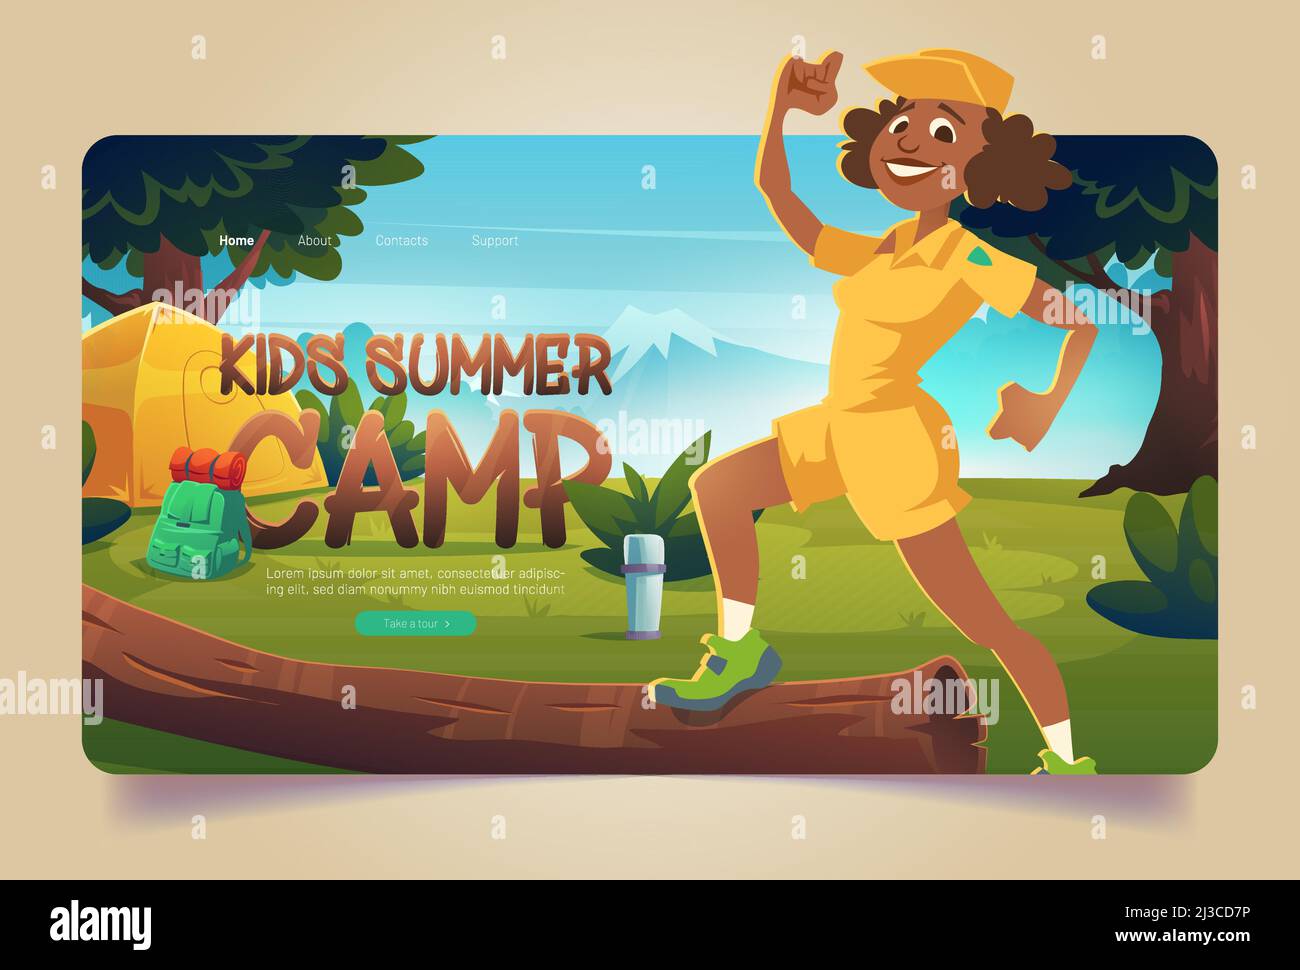 Kinder Sommer Camp Cartoon Landing Page, fröhliche Berater in Boyscout Uniform auf Wanderung Wald camping mit Zelt, Vakuum-Flasche und Rucksack. Sommerzeit Stock Vektor